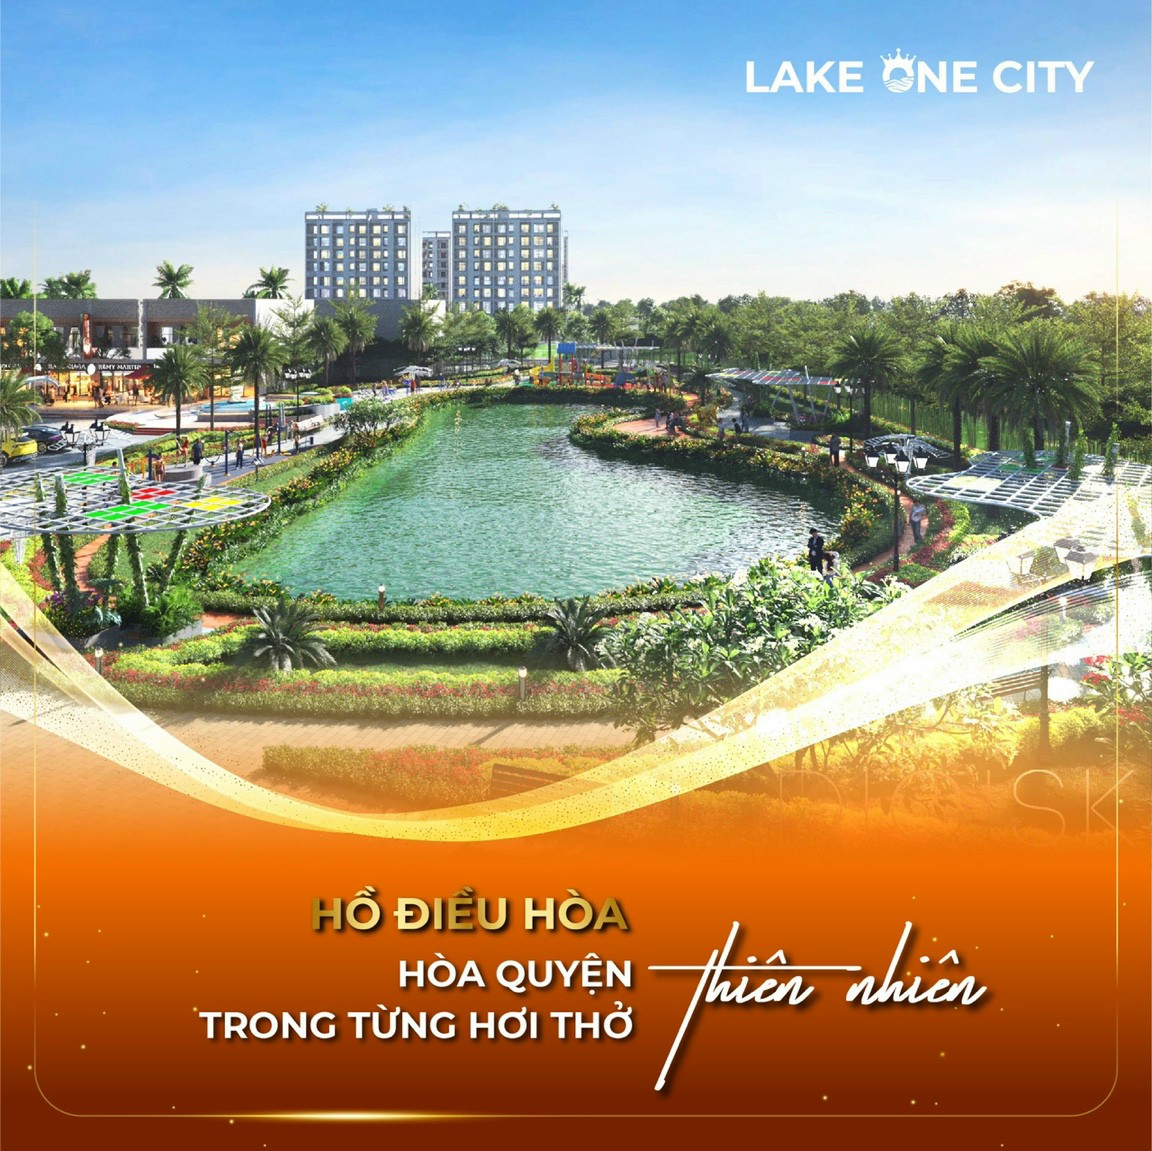 Hồ điều hoà bao trọn dự án Lake One City Bình Phước.